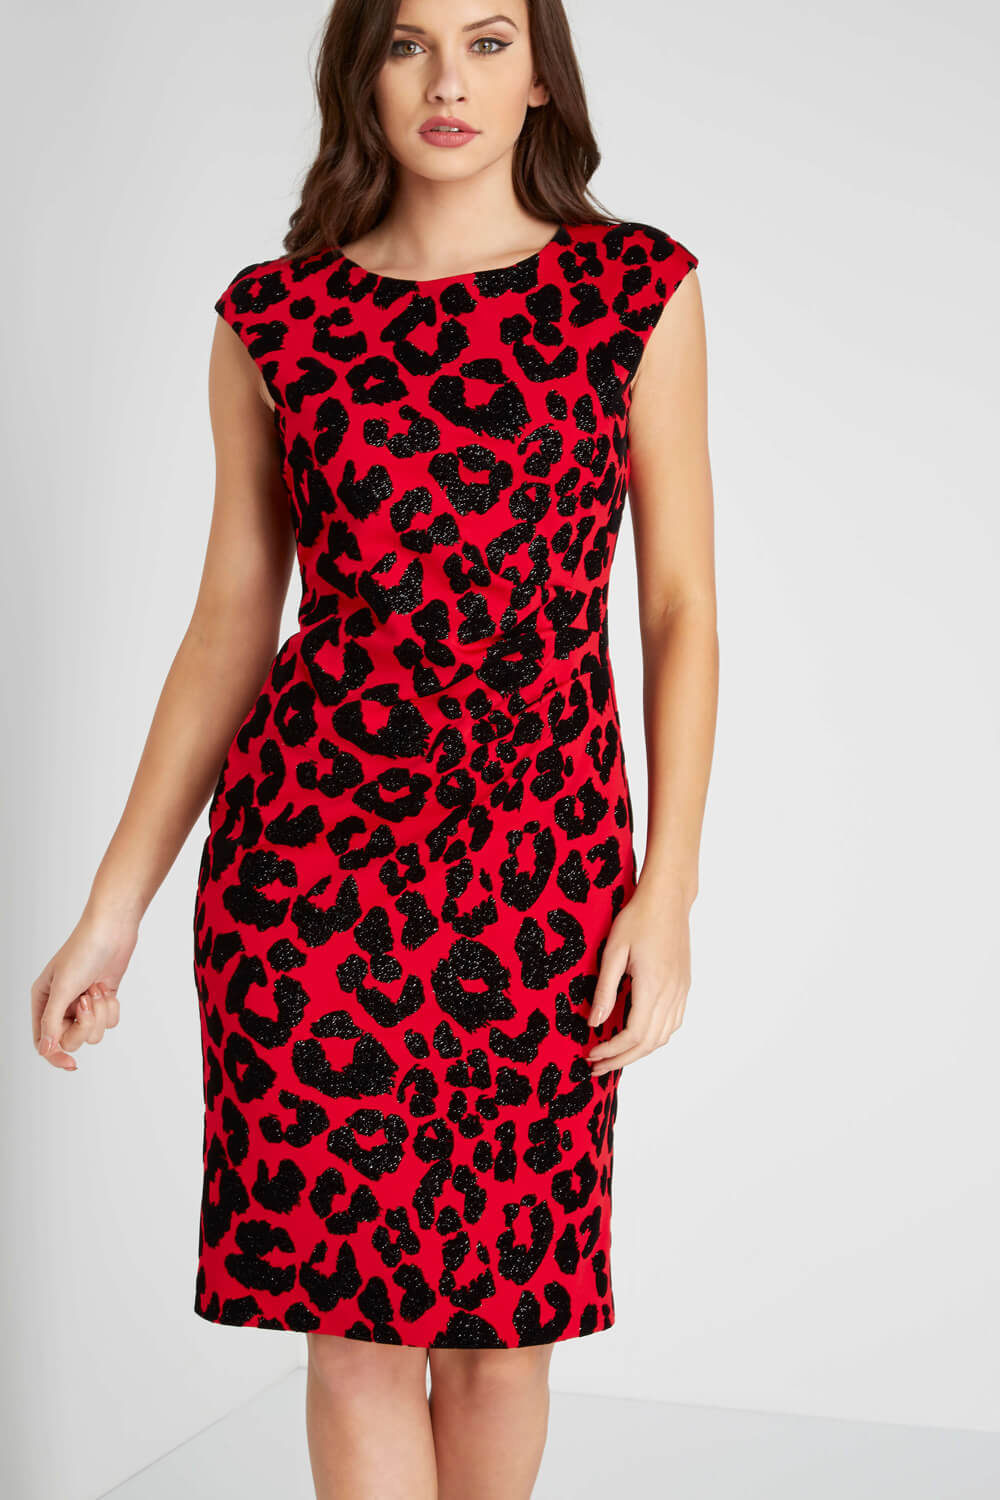 roman leopard print dress